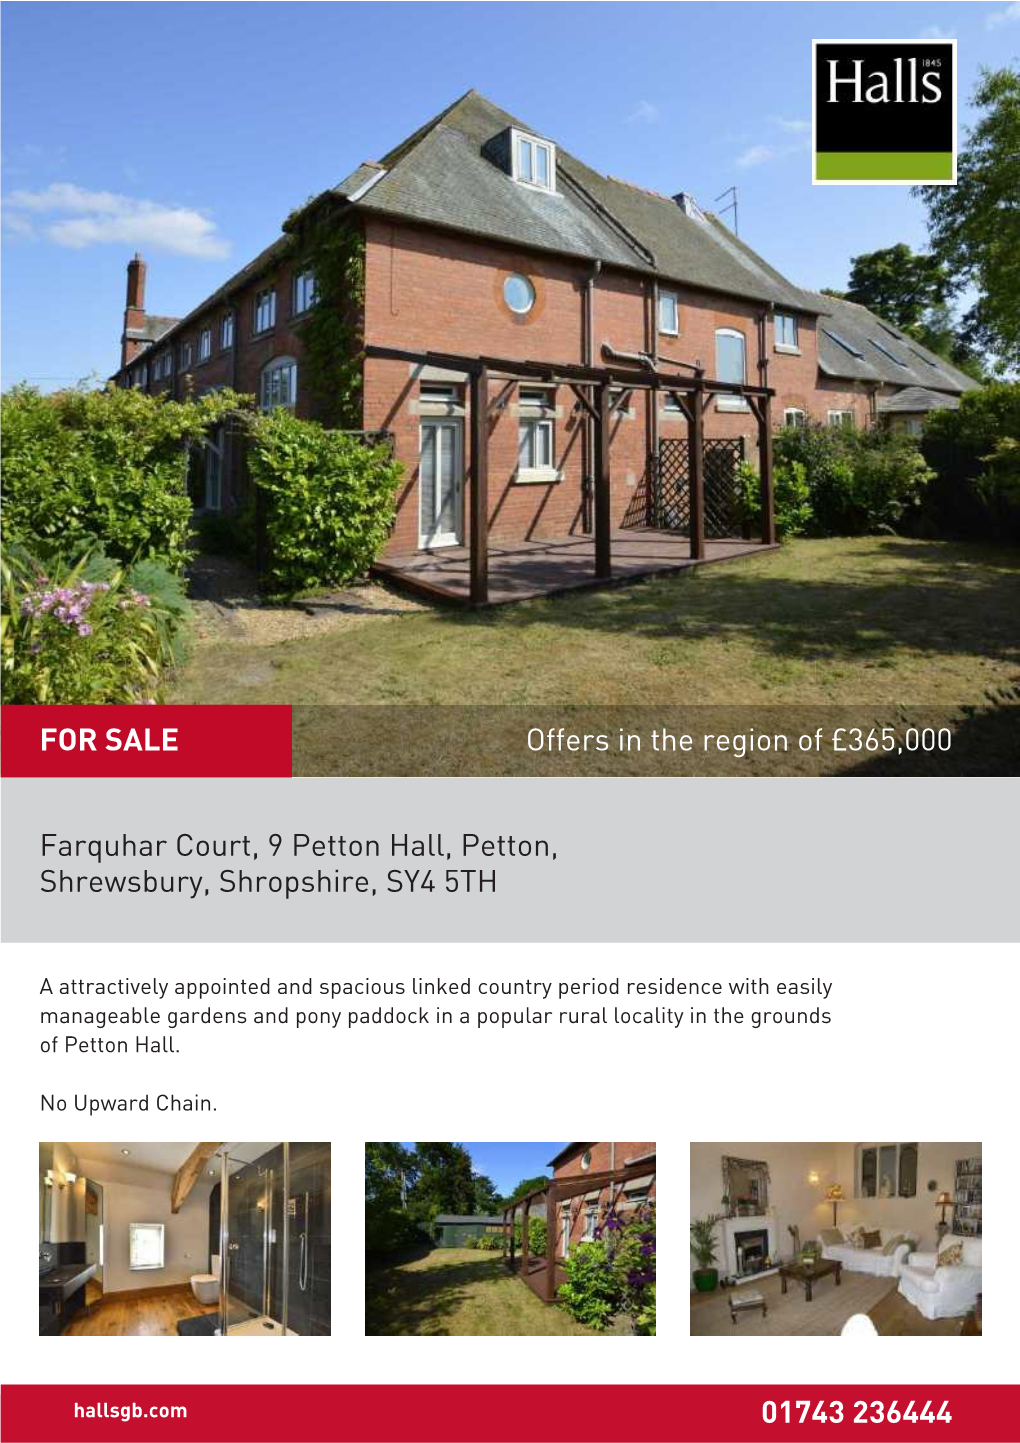 Farquhar Court, 9 Petton Hall, Petton, Shrewsbury, Shropshire, SY4 5TH